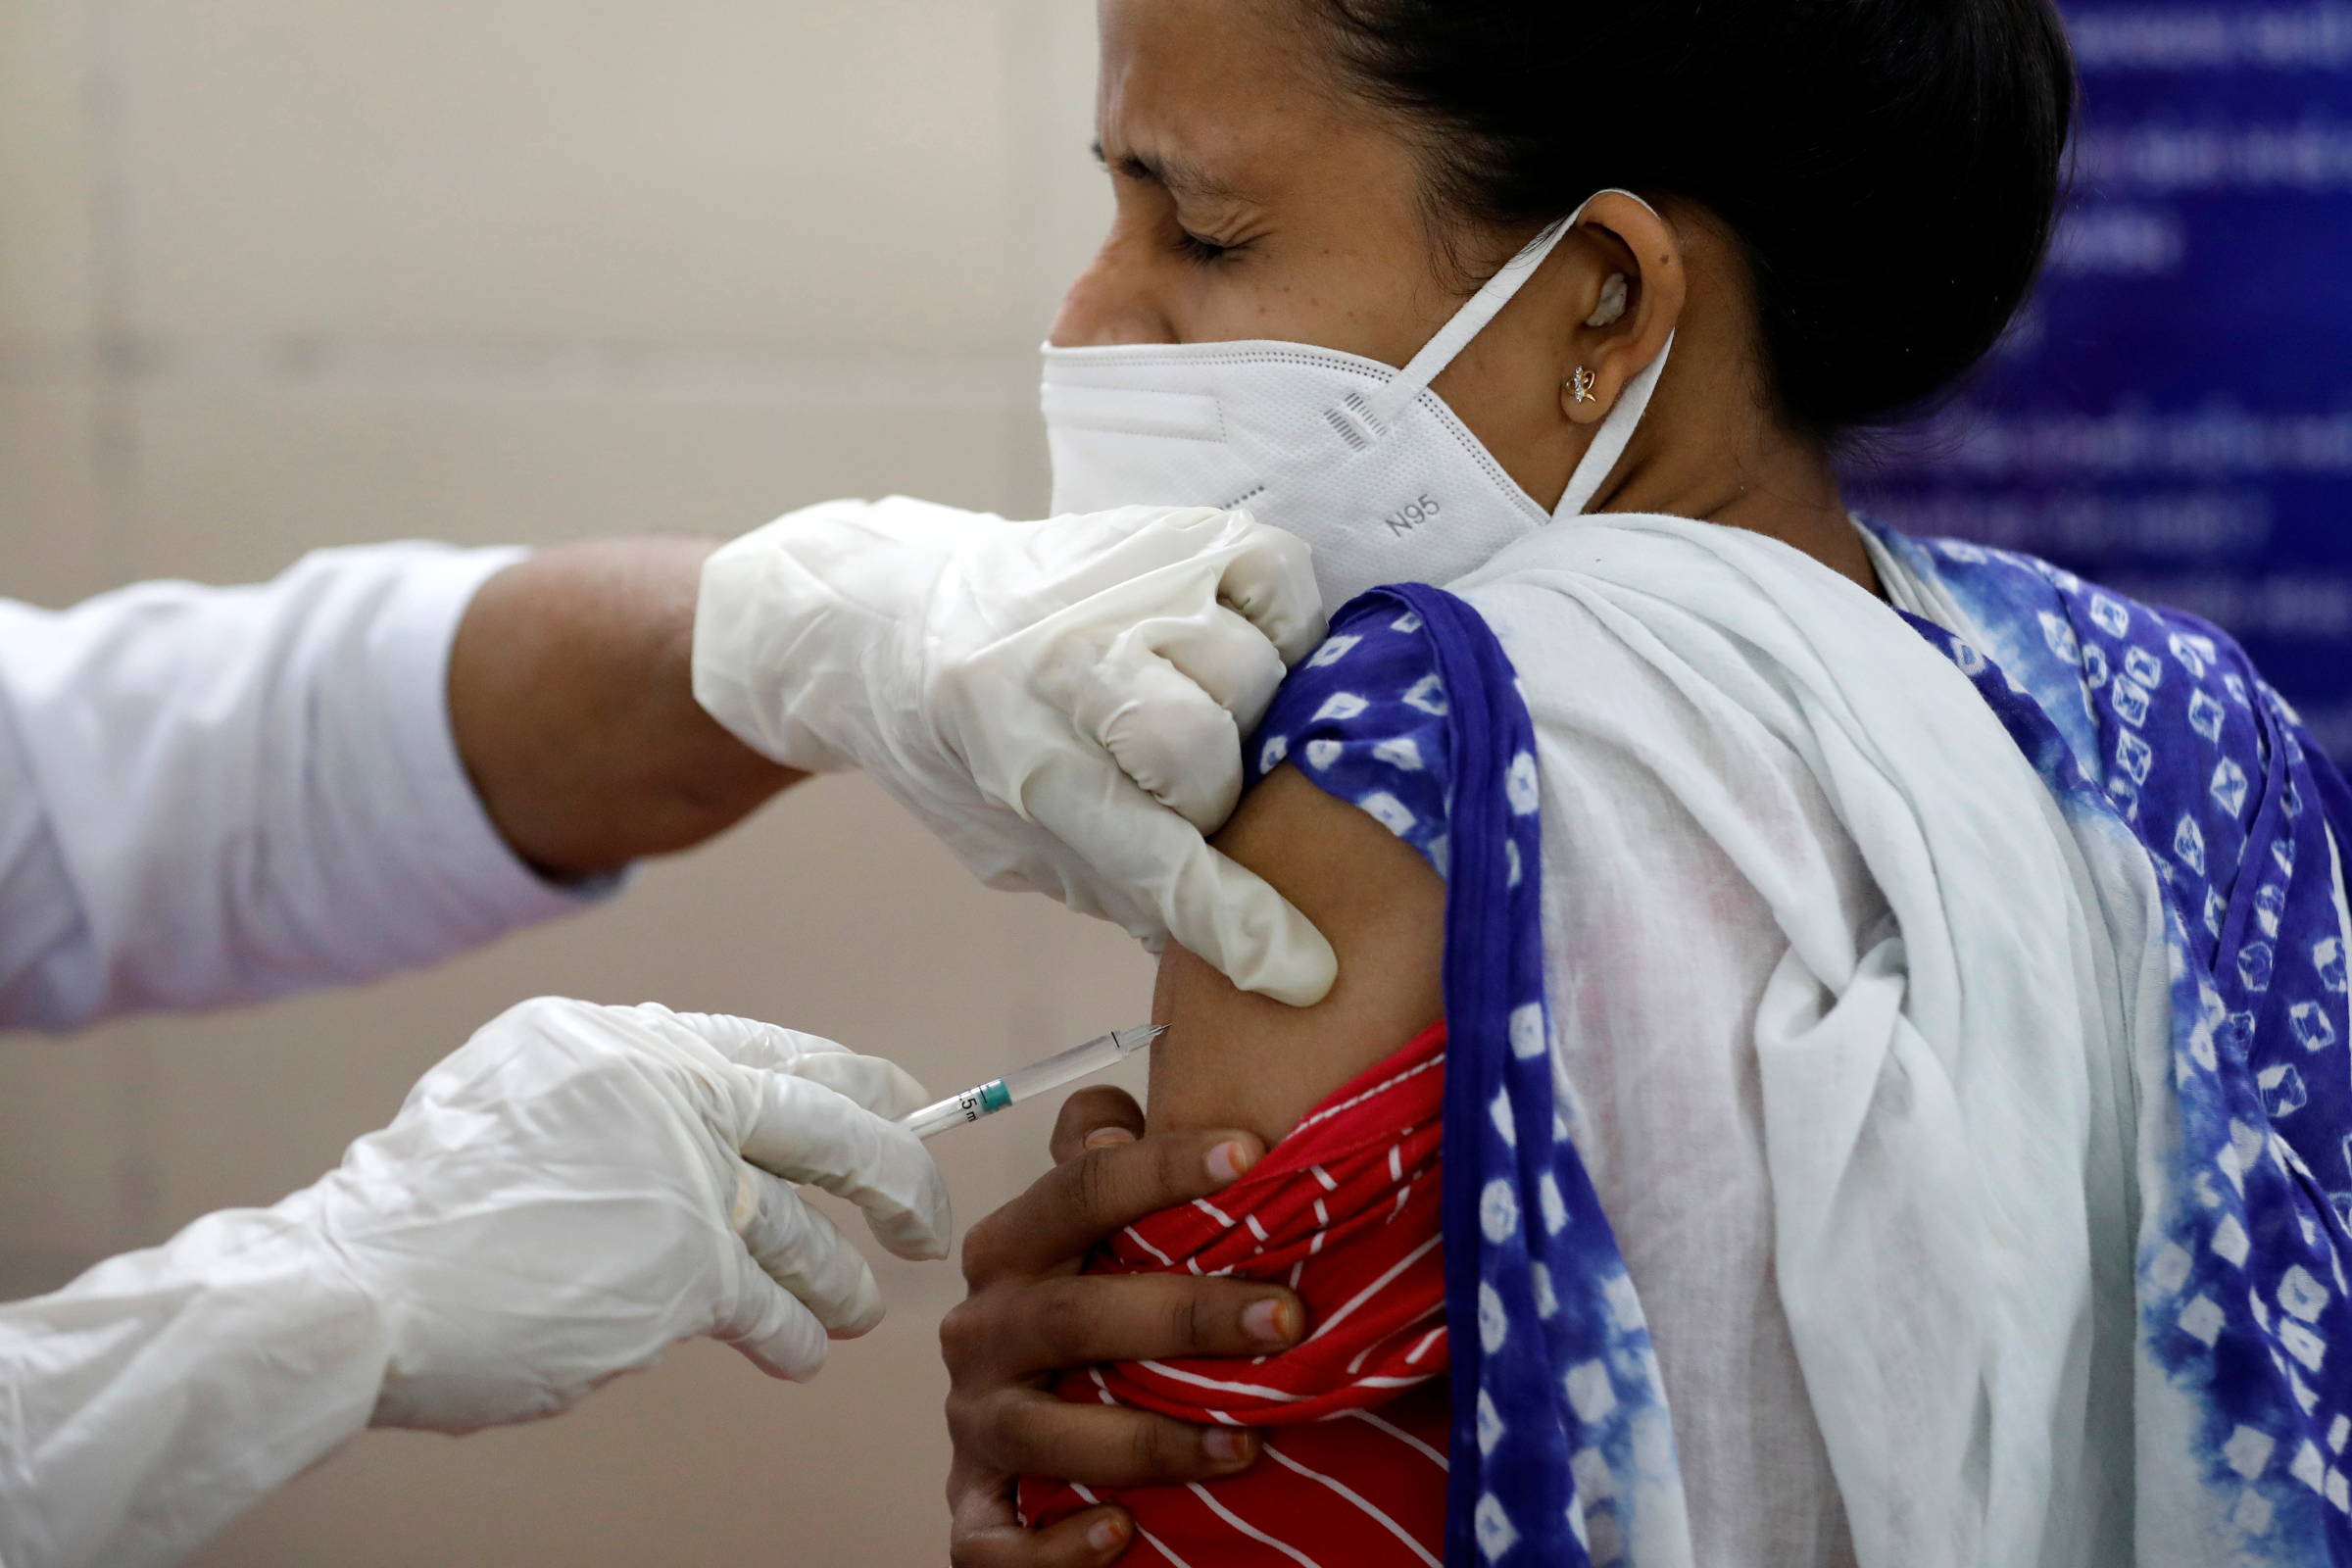 Aprovada no Brasil, vacinação privada ocorre na Índia e está em discussão em outros países asiáticos - 05/04/2021 - Equilíbrio e Saúde - Folha